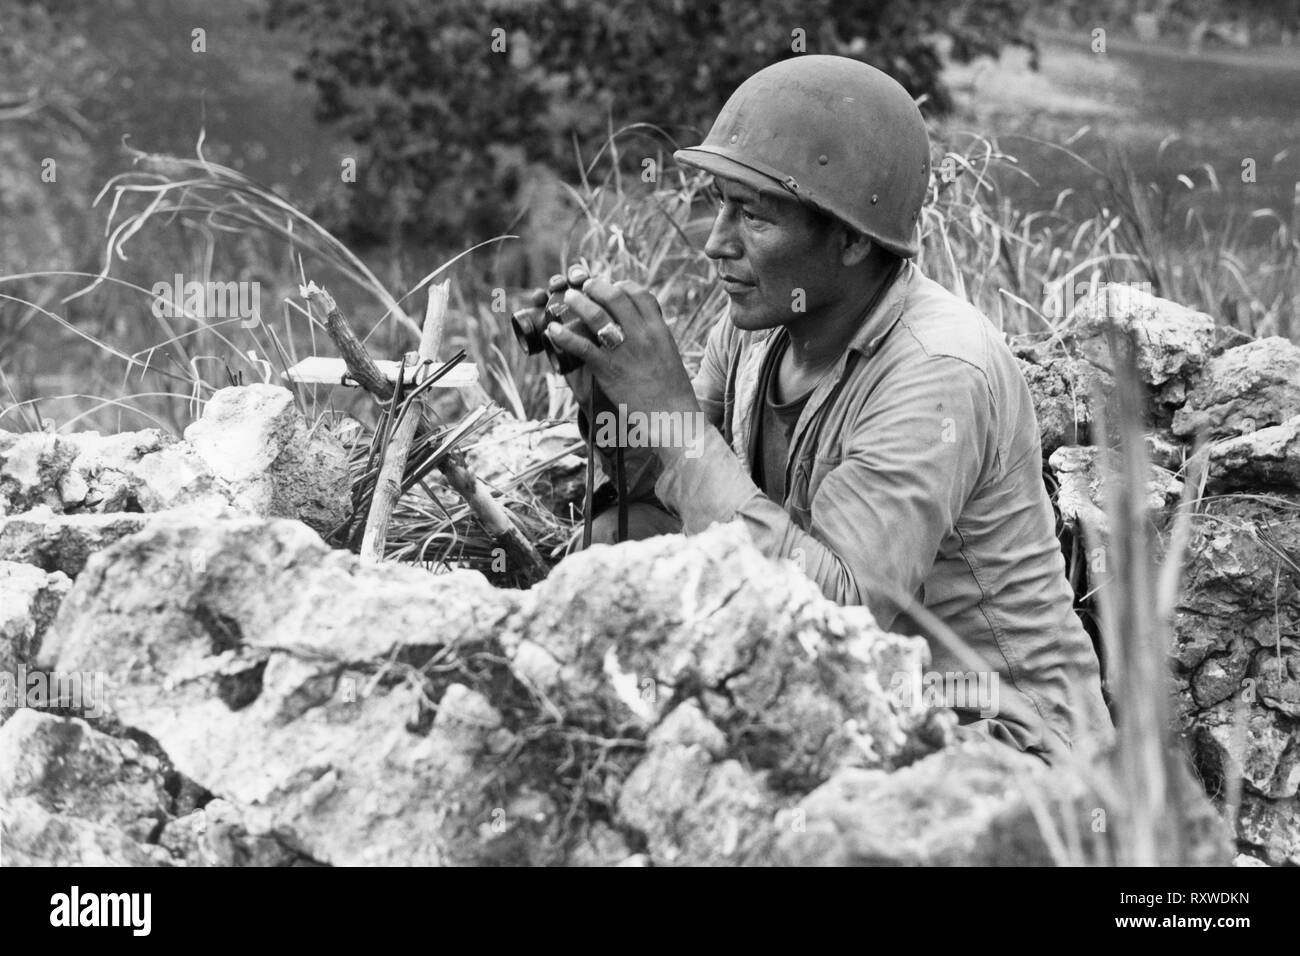 Navajo Indianer code-talker Pfc Carl Gorman in Chinle, Arizona, Manning einen Beobachtungsposten auf einem Hügel mit Blick auf die Stadt von Garapan, während die US-Marines ihre Positionen stärken auf der Insel Saipan, Marianen am 27. Juni 1944 Waren während der Schlacht um Saipan. Stockfoto